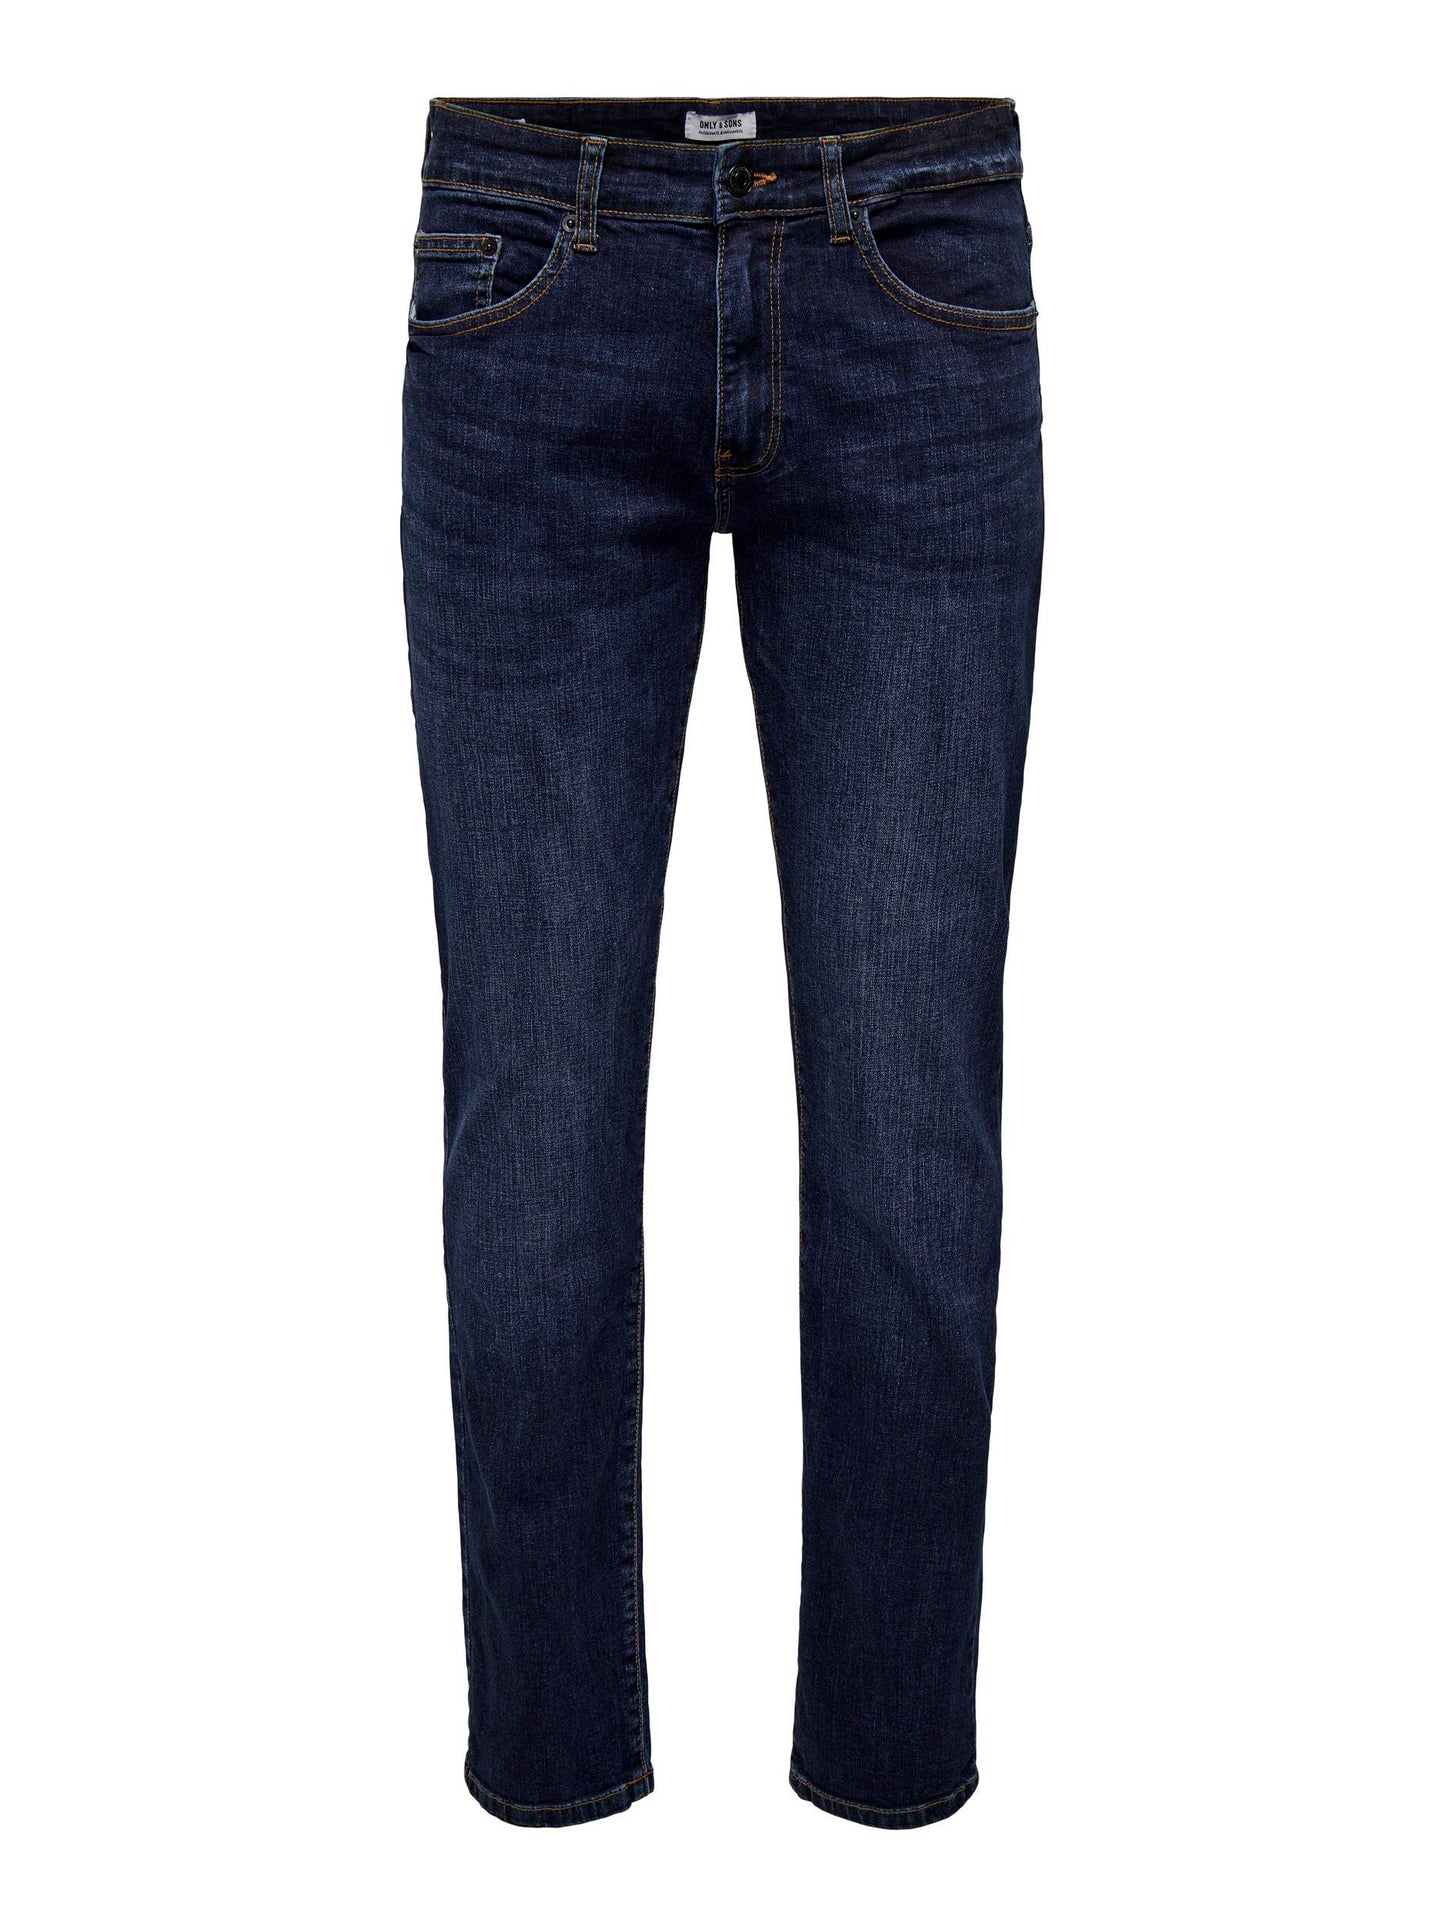 Jeans Weft Reg.Dk. Blue 6752 Denim Noos Only & Sons